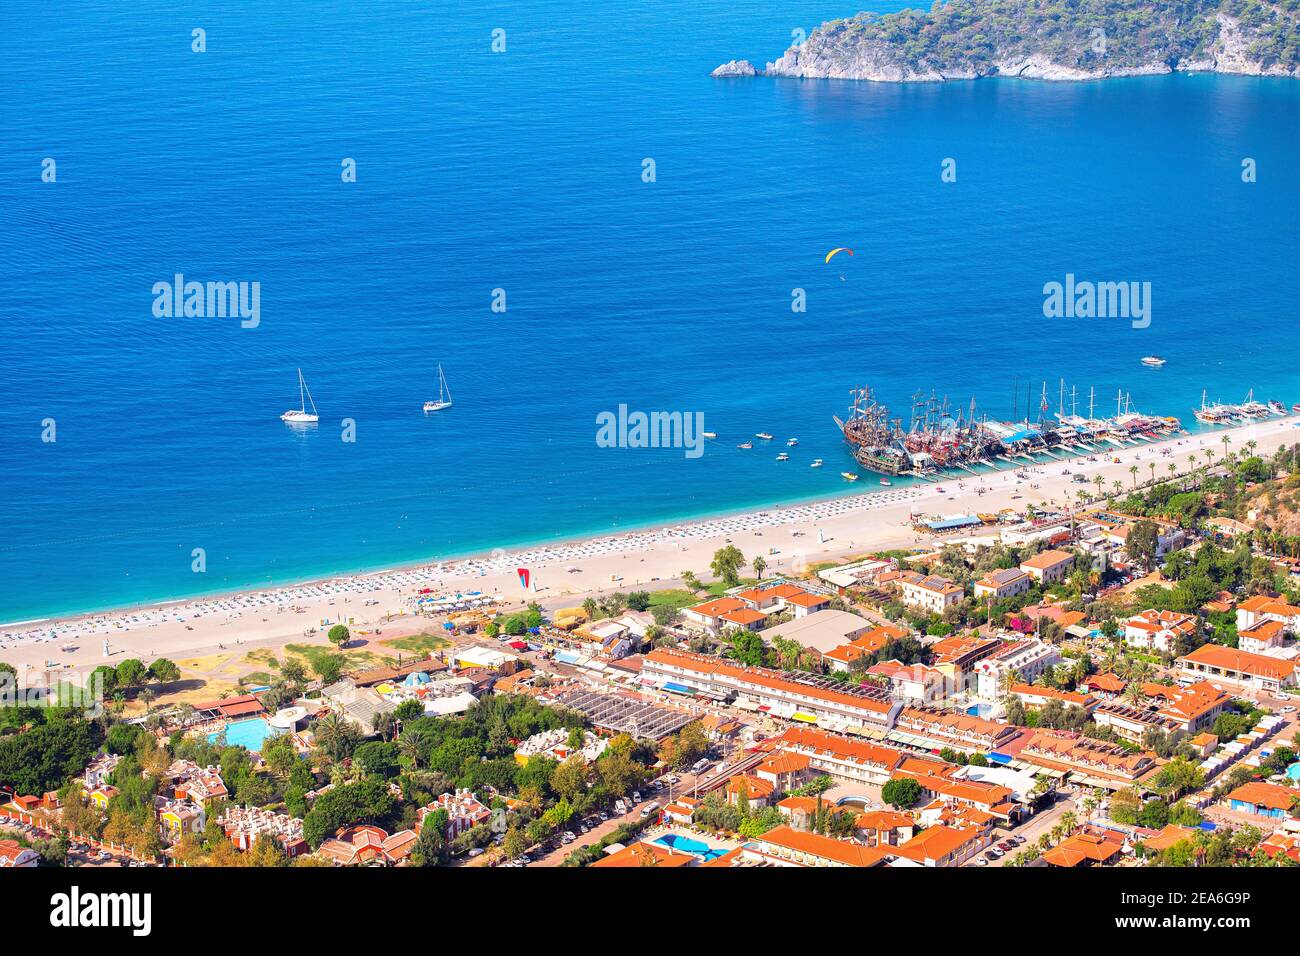 Vista aerea della spiaggia del resort e delle navi e yacht turistici nella laguna blu del mare. Vacanze e costa in Turchia Foto Stock